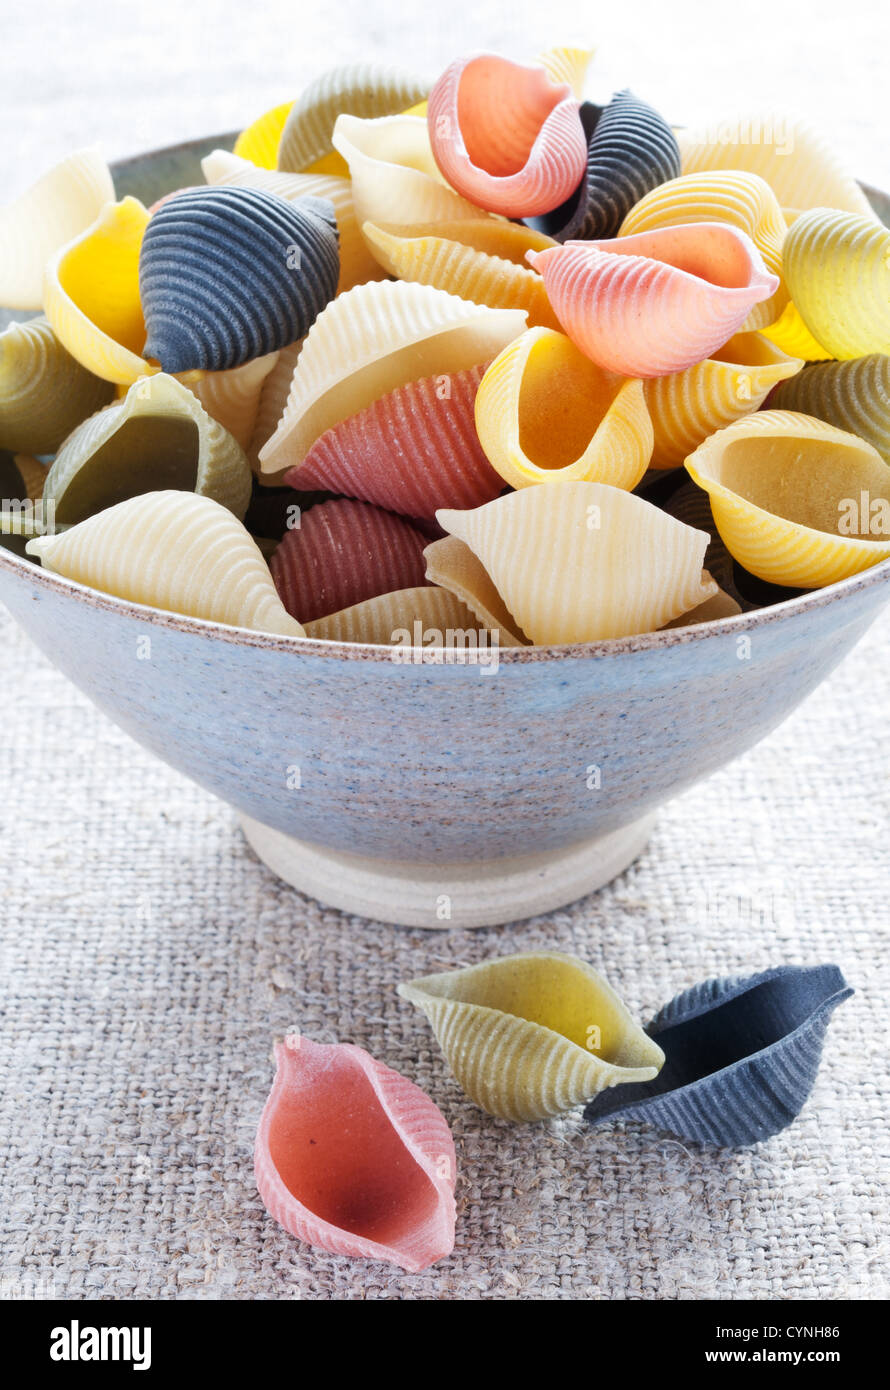 Italian multi colored pasta in bowl Stock Photo